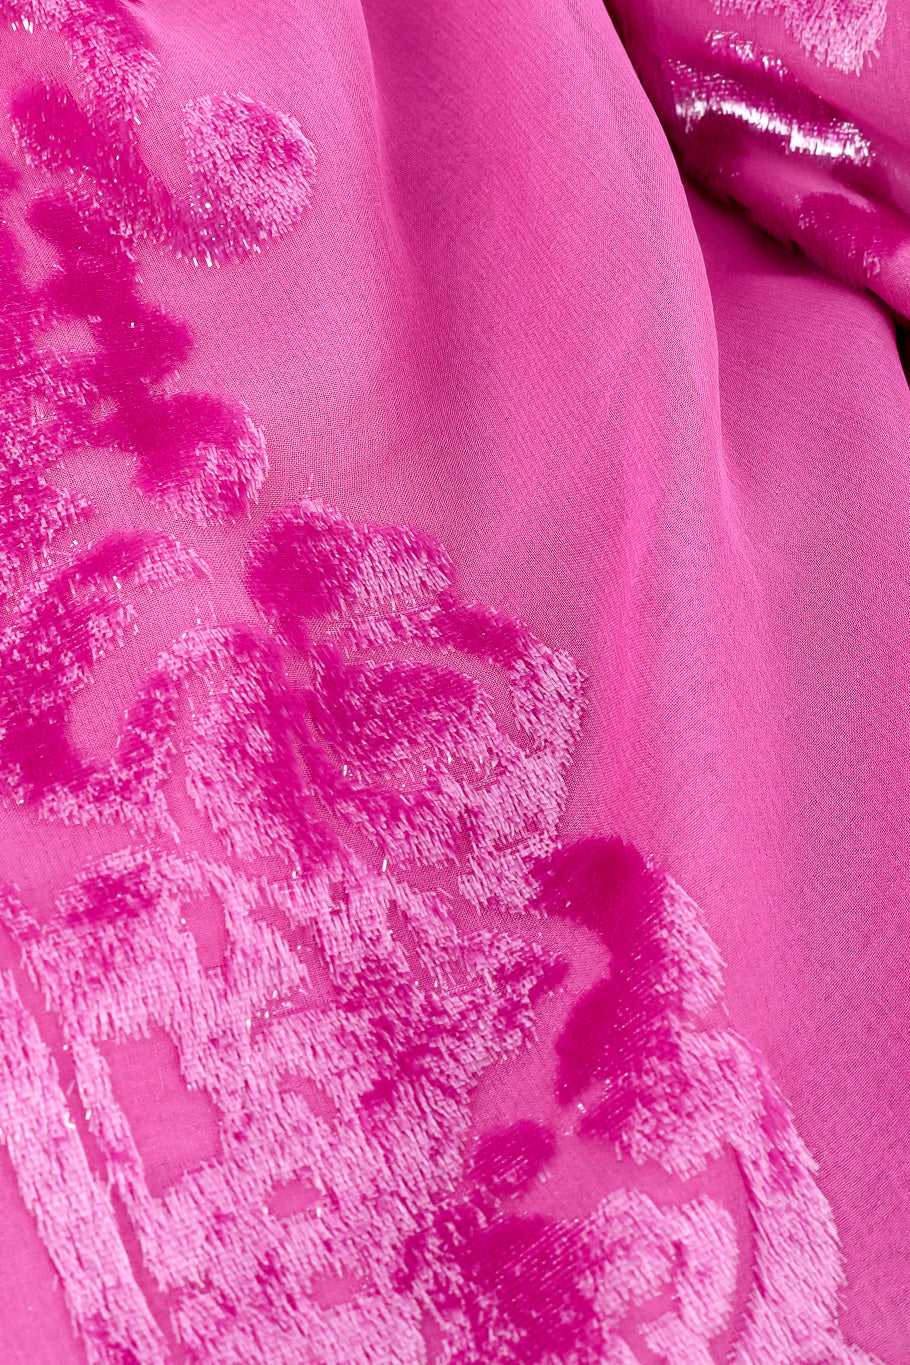 Velvet fringe shawl by Valentino silk close @recessla